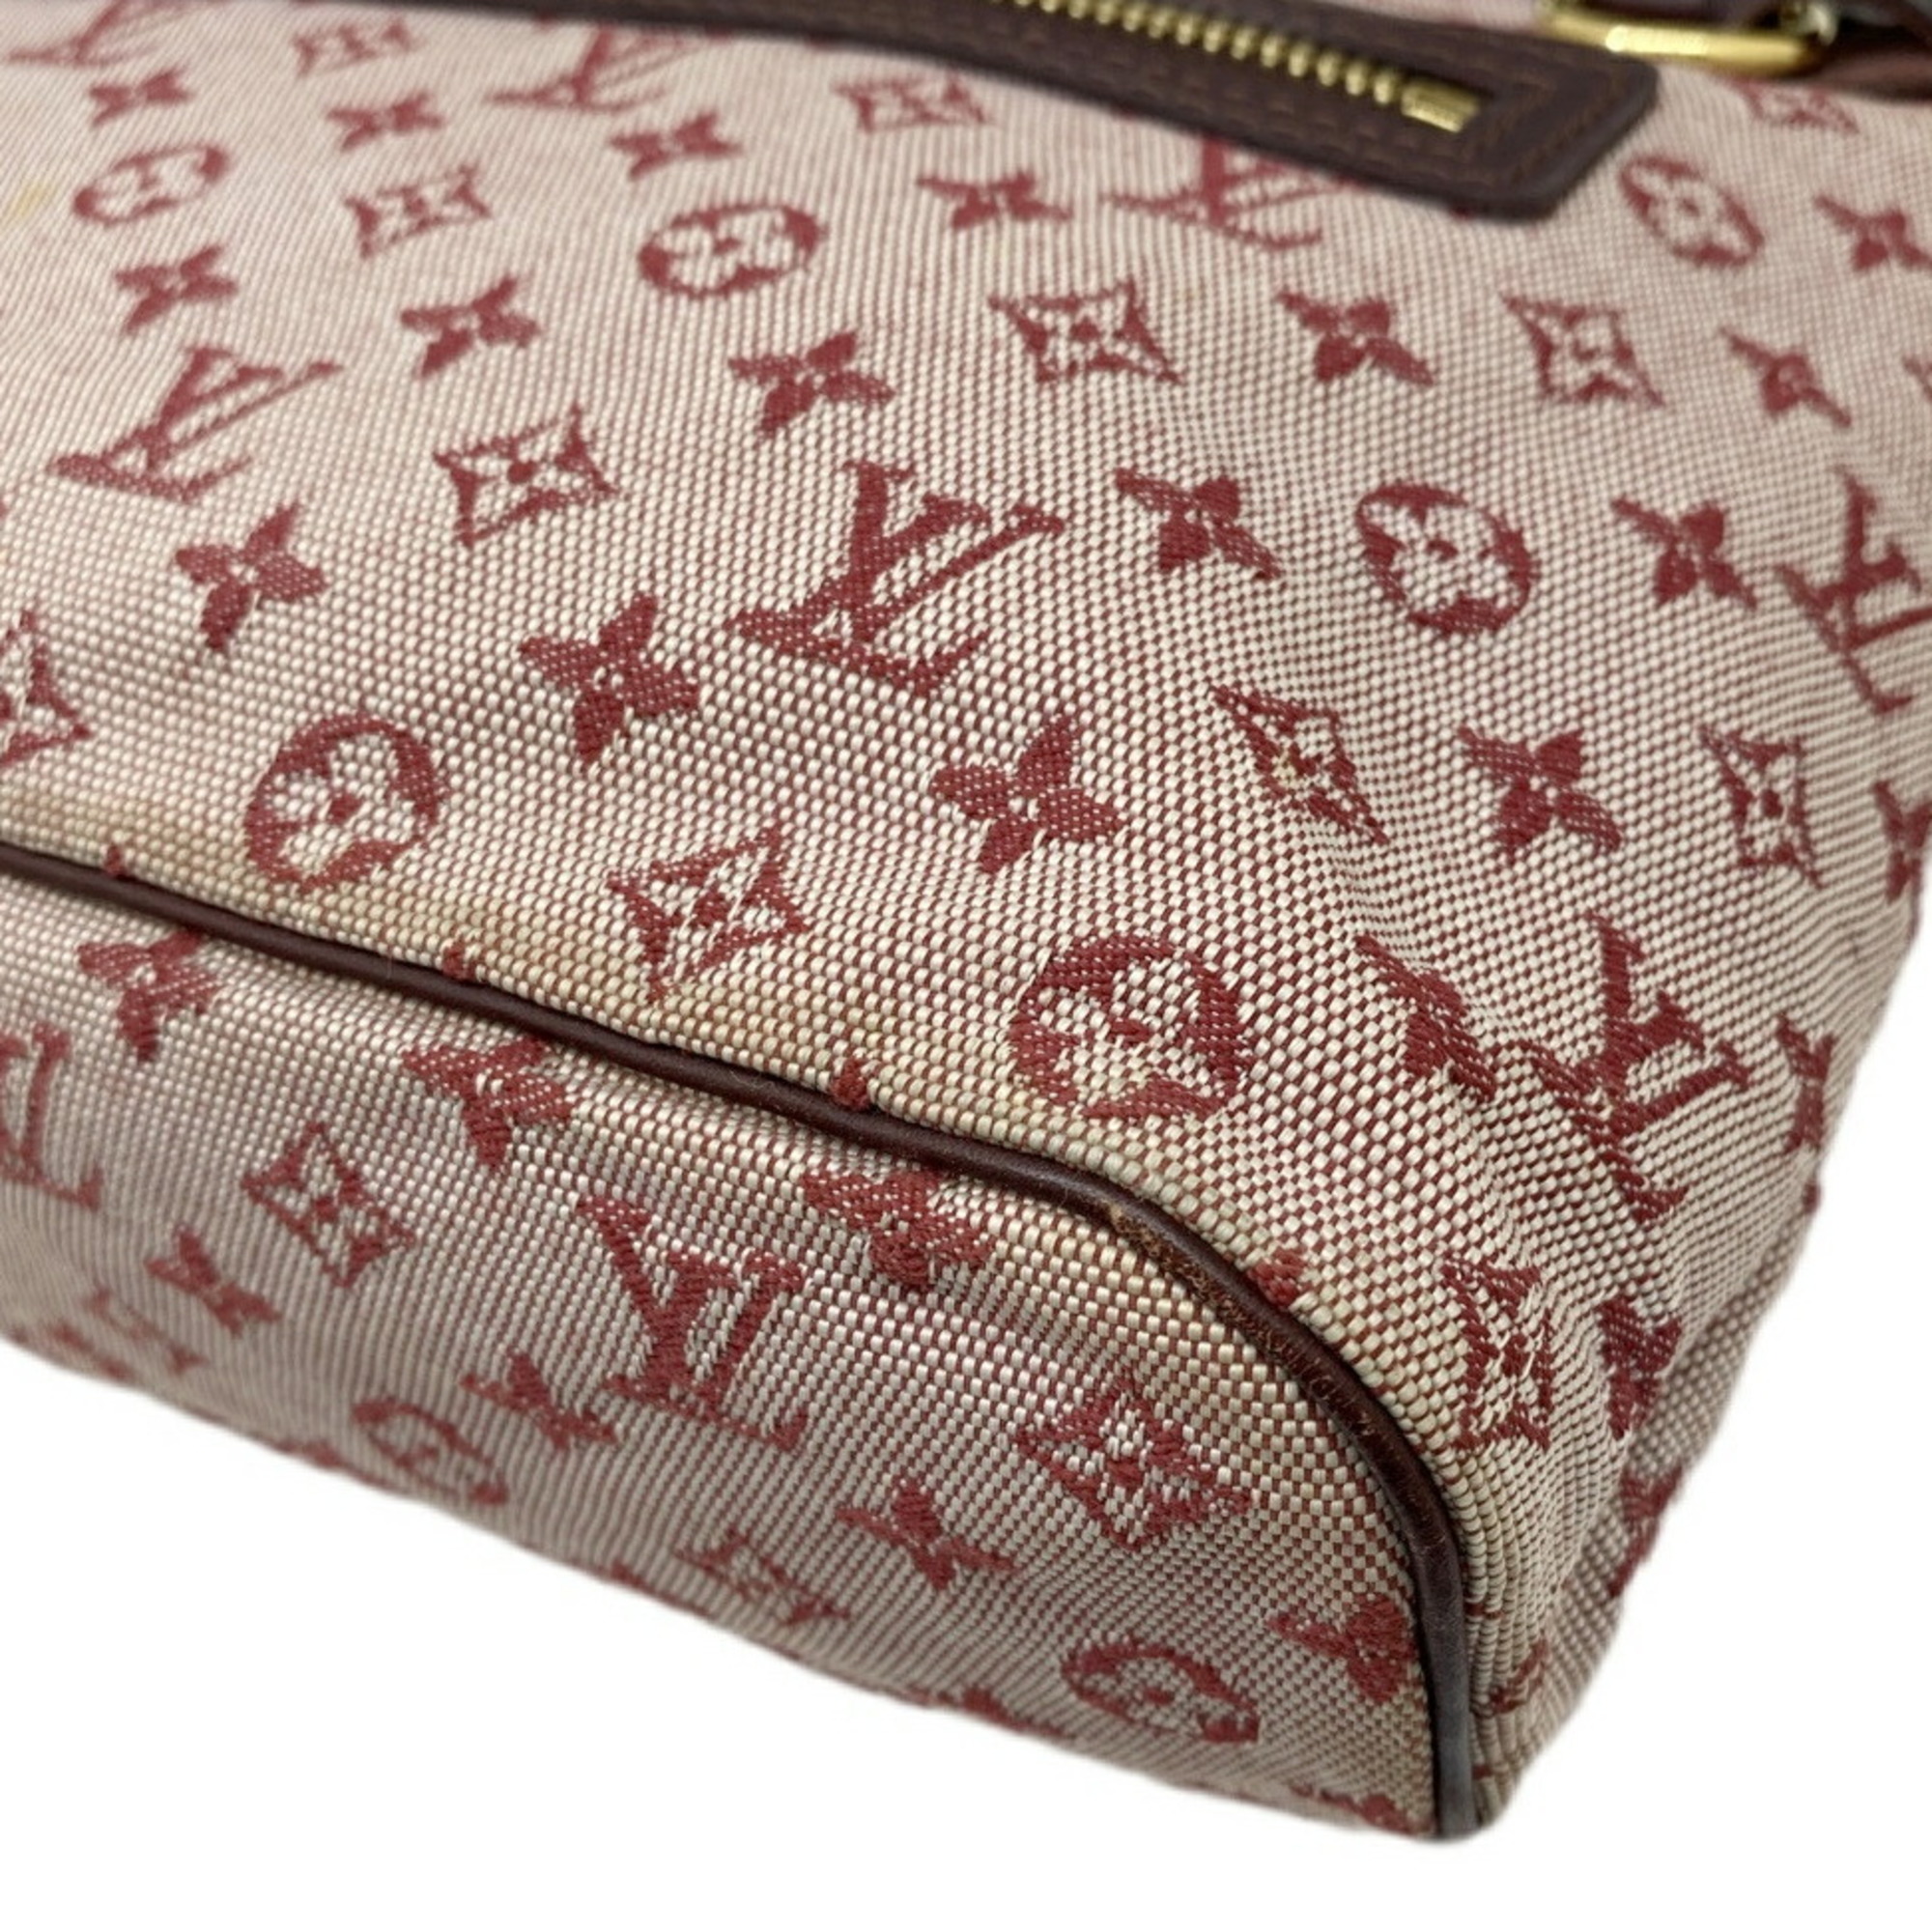 LOUIS VUITTON Louis Vuitton Lucille PM Cerise Monogram Canvas Handbag Shoulder Bag with Initials Women's